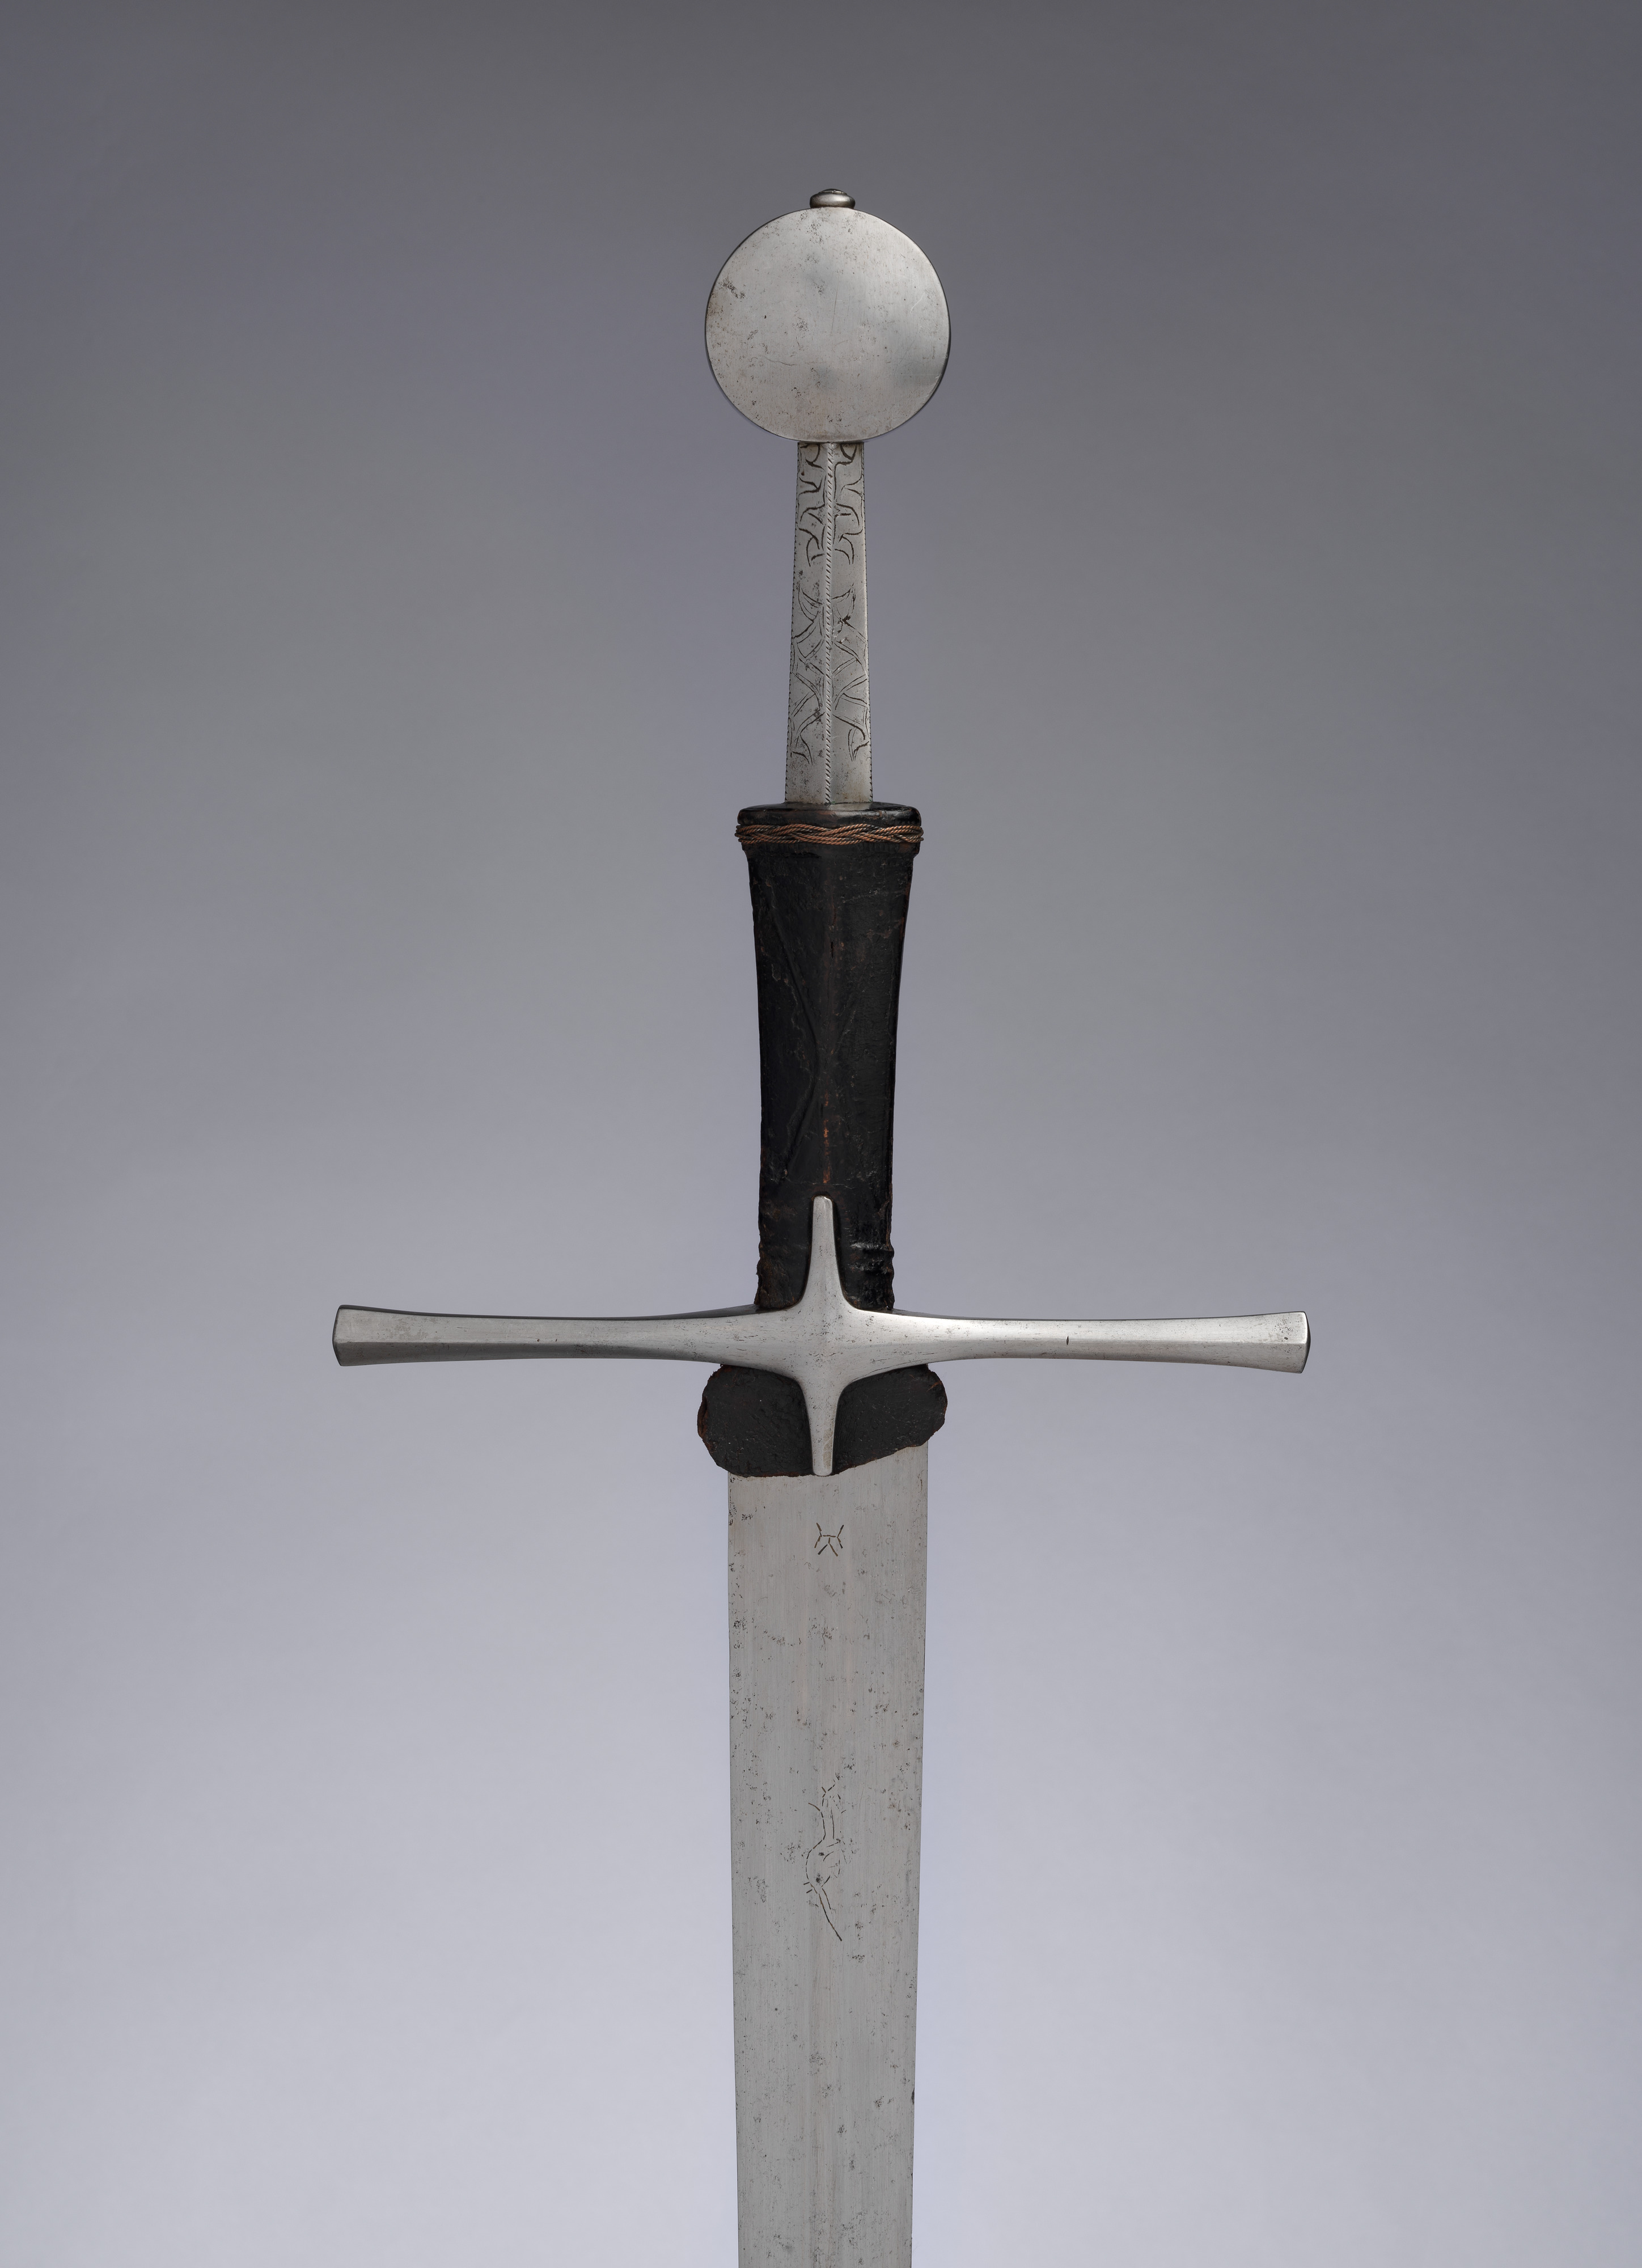 Tewkesbury Sword